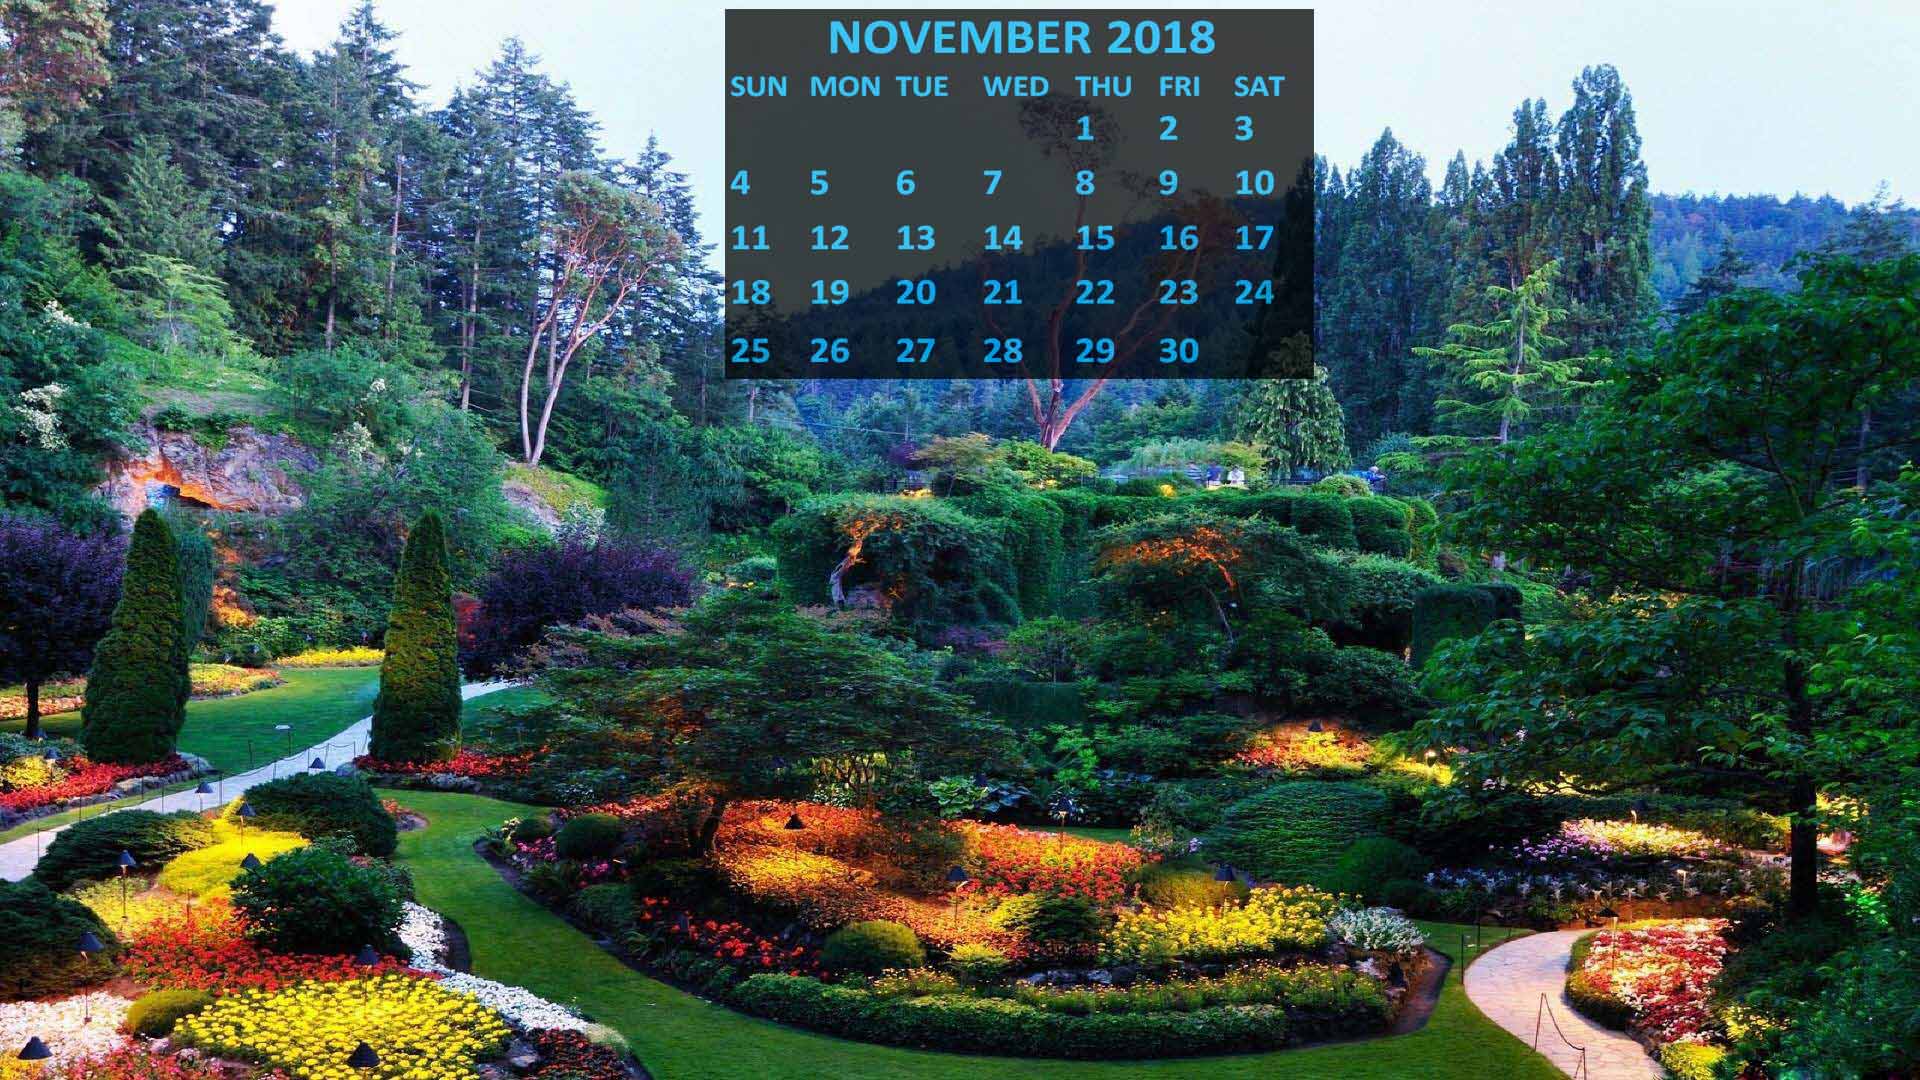 カレンダー壁紙,自然の風景,自然,植物園,庭園,木